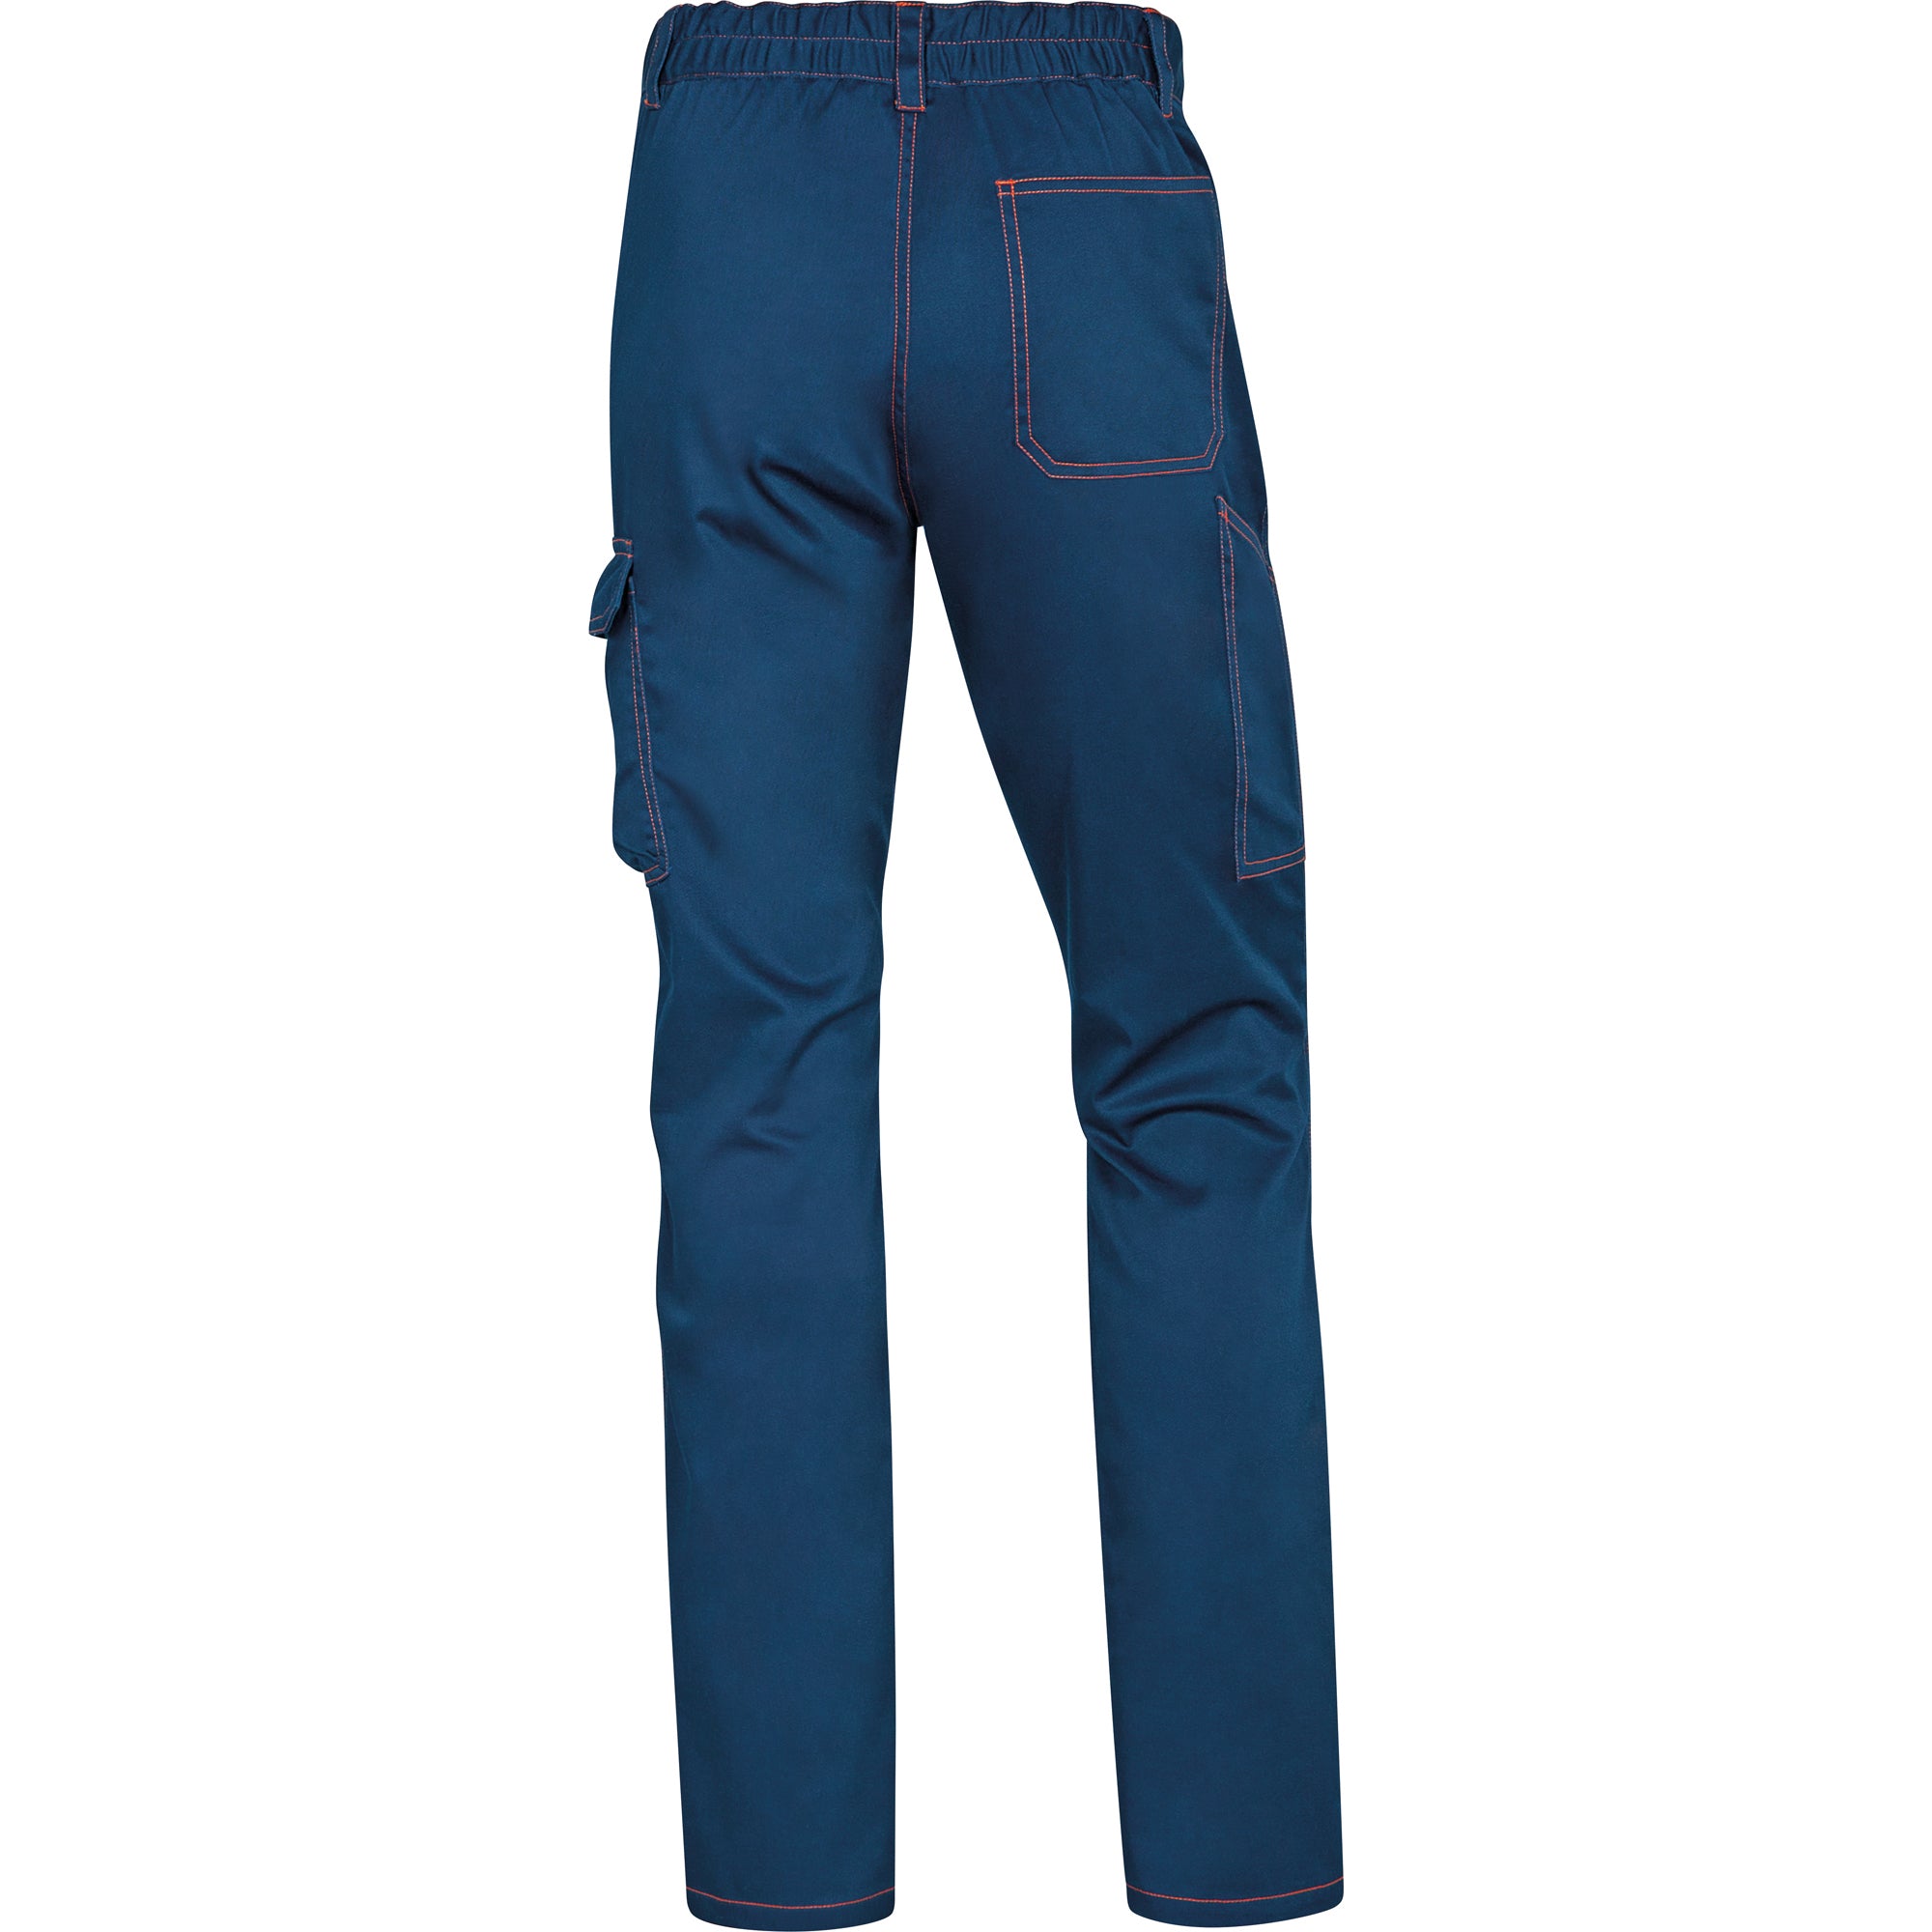 deltaplus-pantalone-lavoro-panostrpa-tg-l-blu-arancio